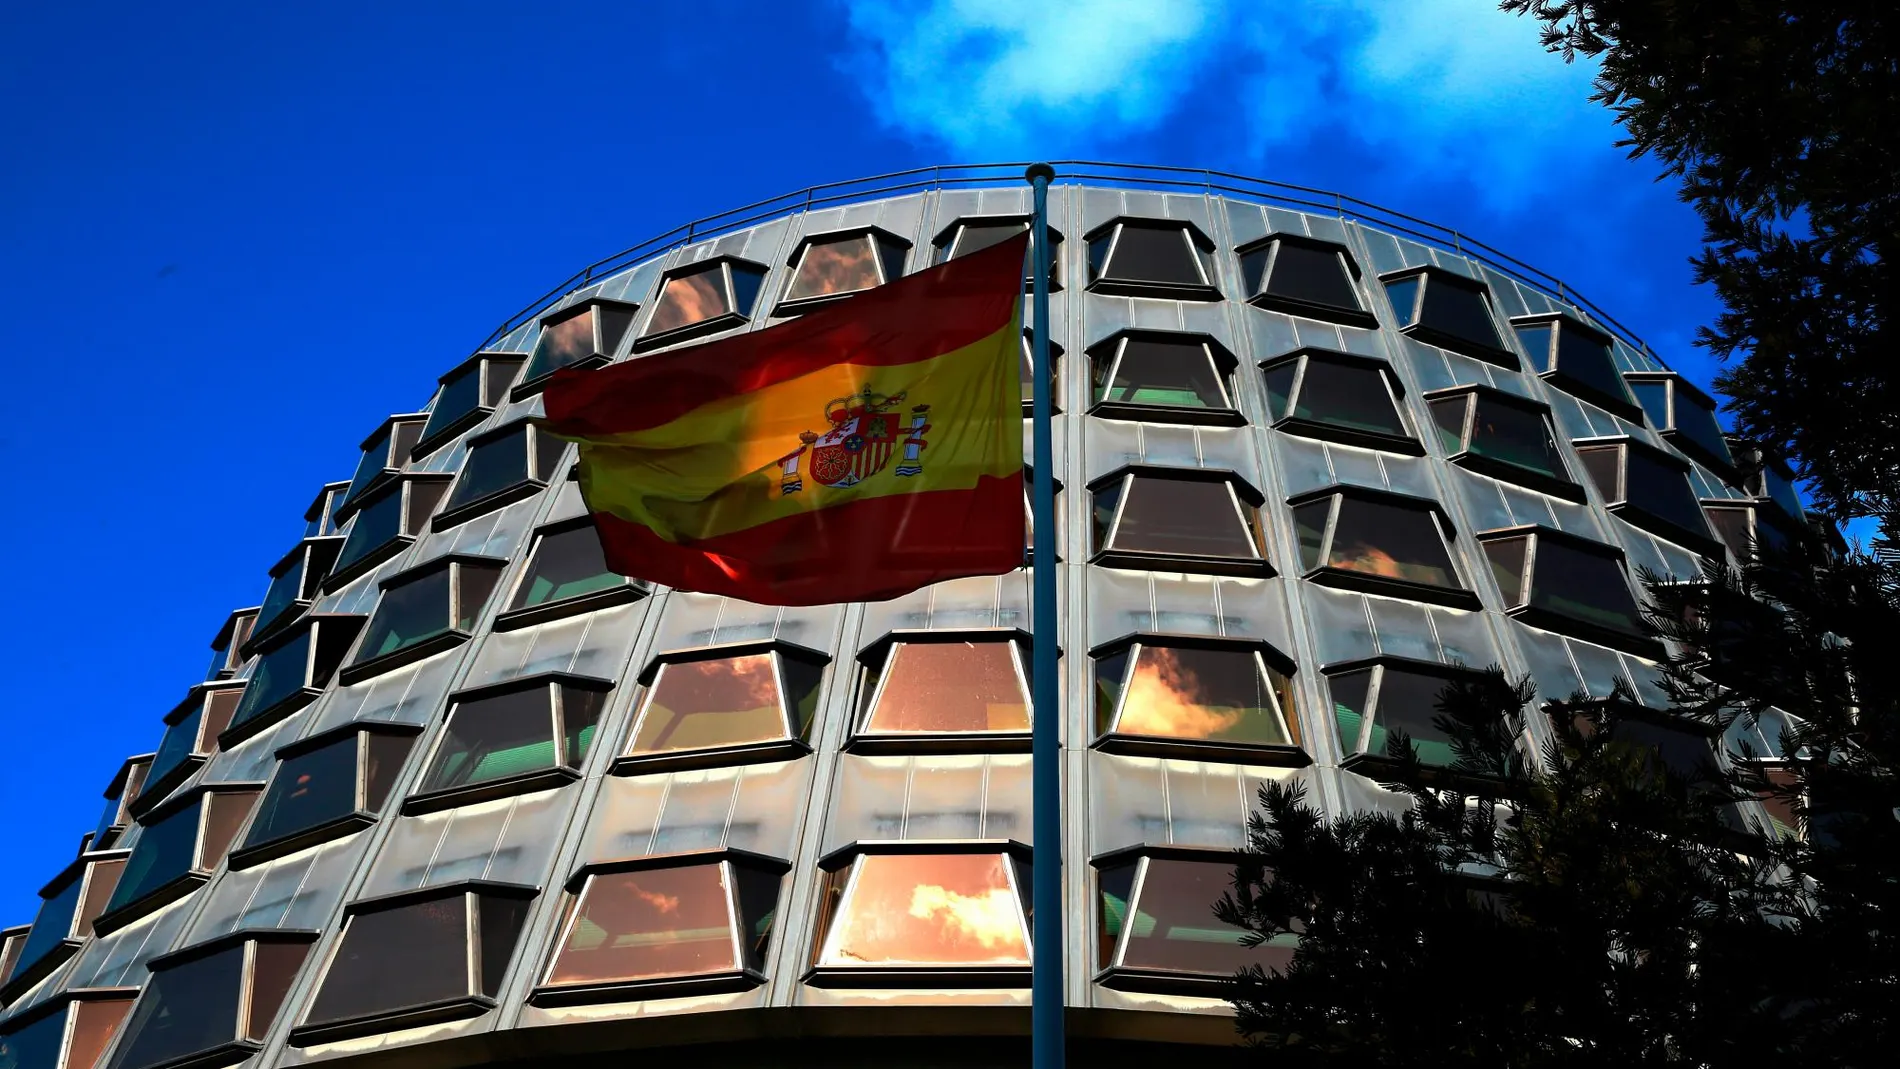 El Pleno del Tribunal Constitucional ha dado respuesta al conflicto positivo de competencia promovido por el Gobierno de Cataluña